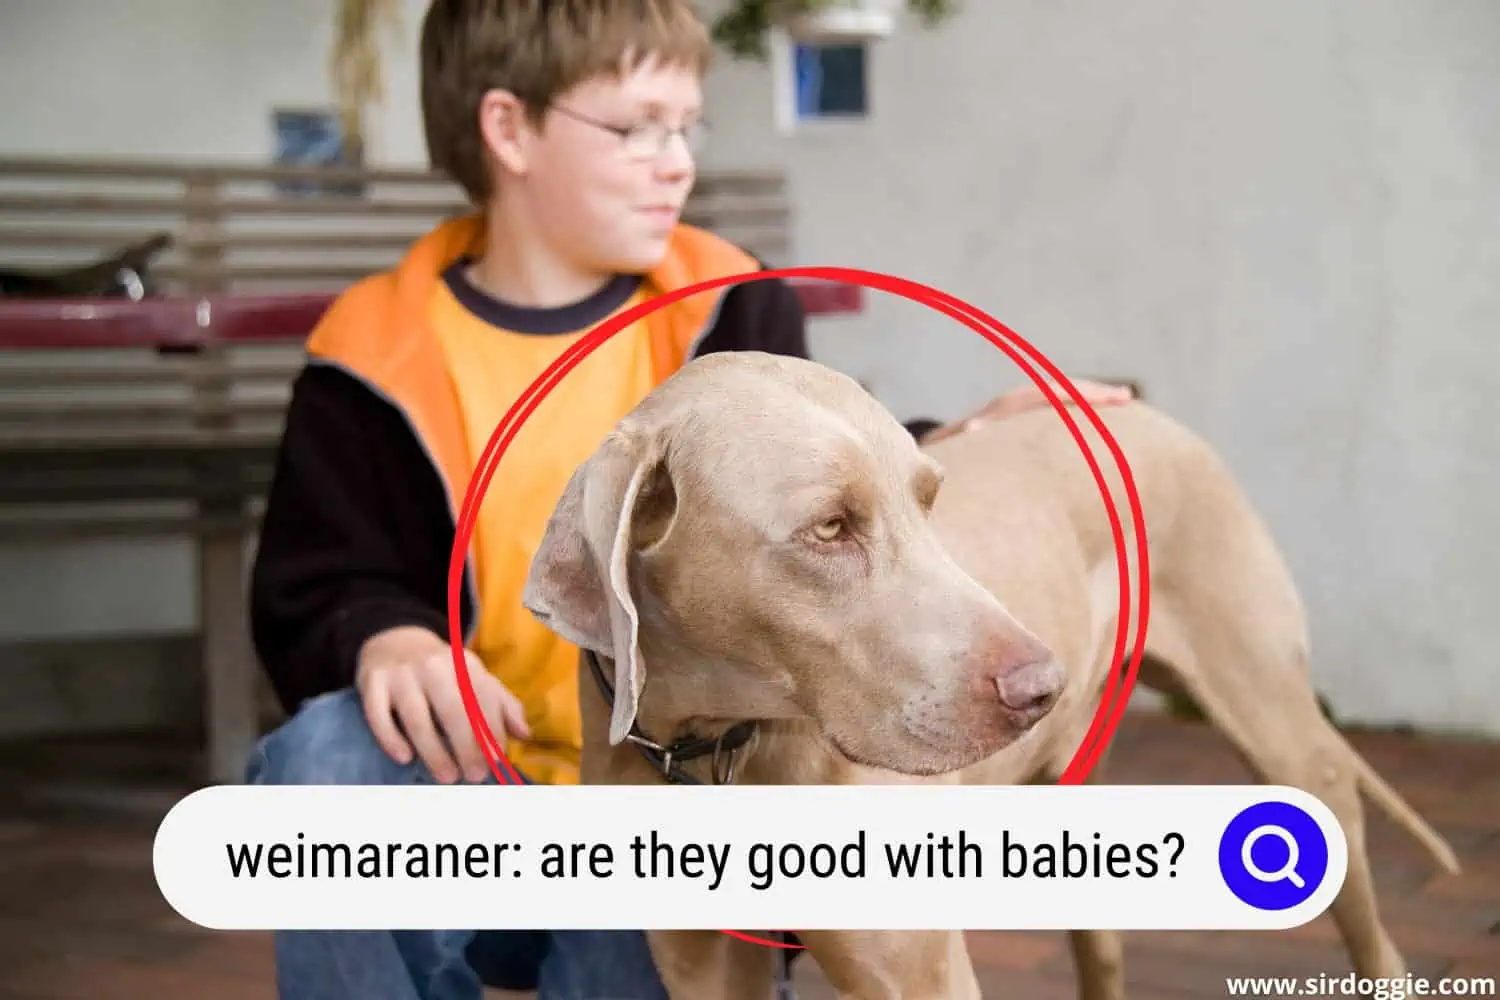 A kid with Weimaraner dog